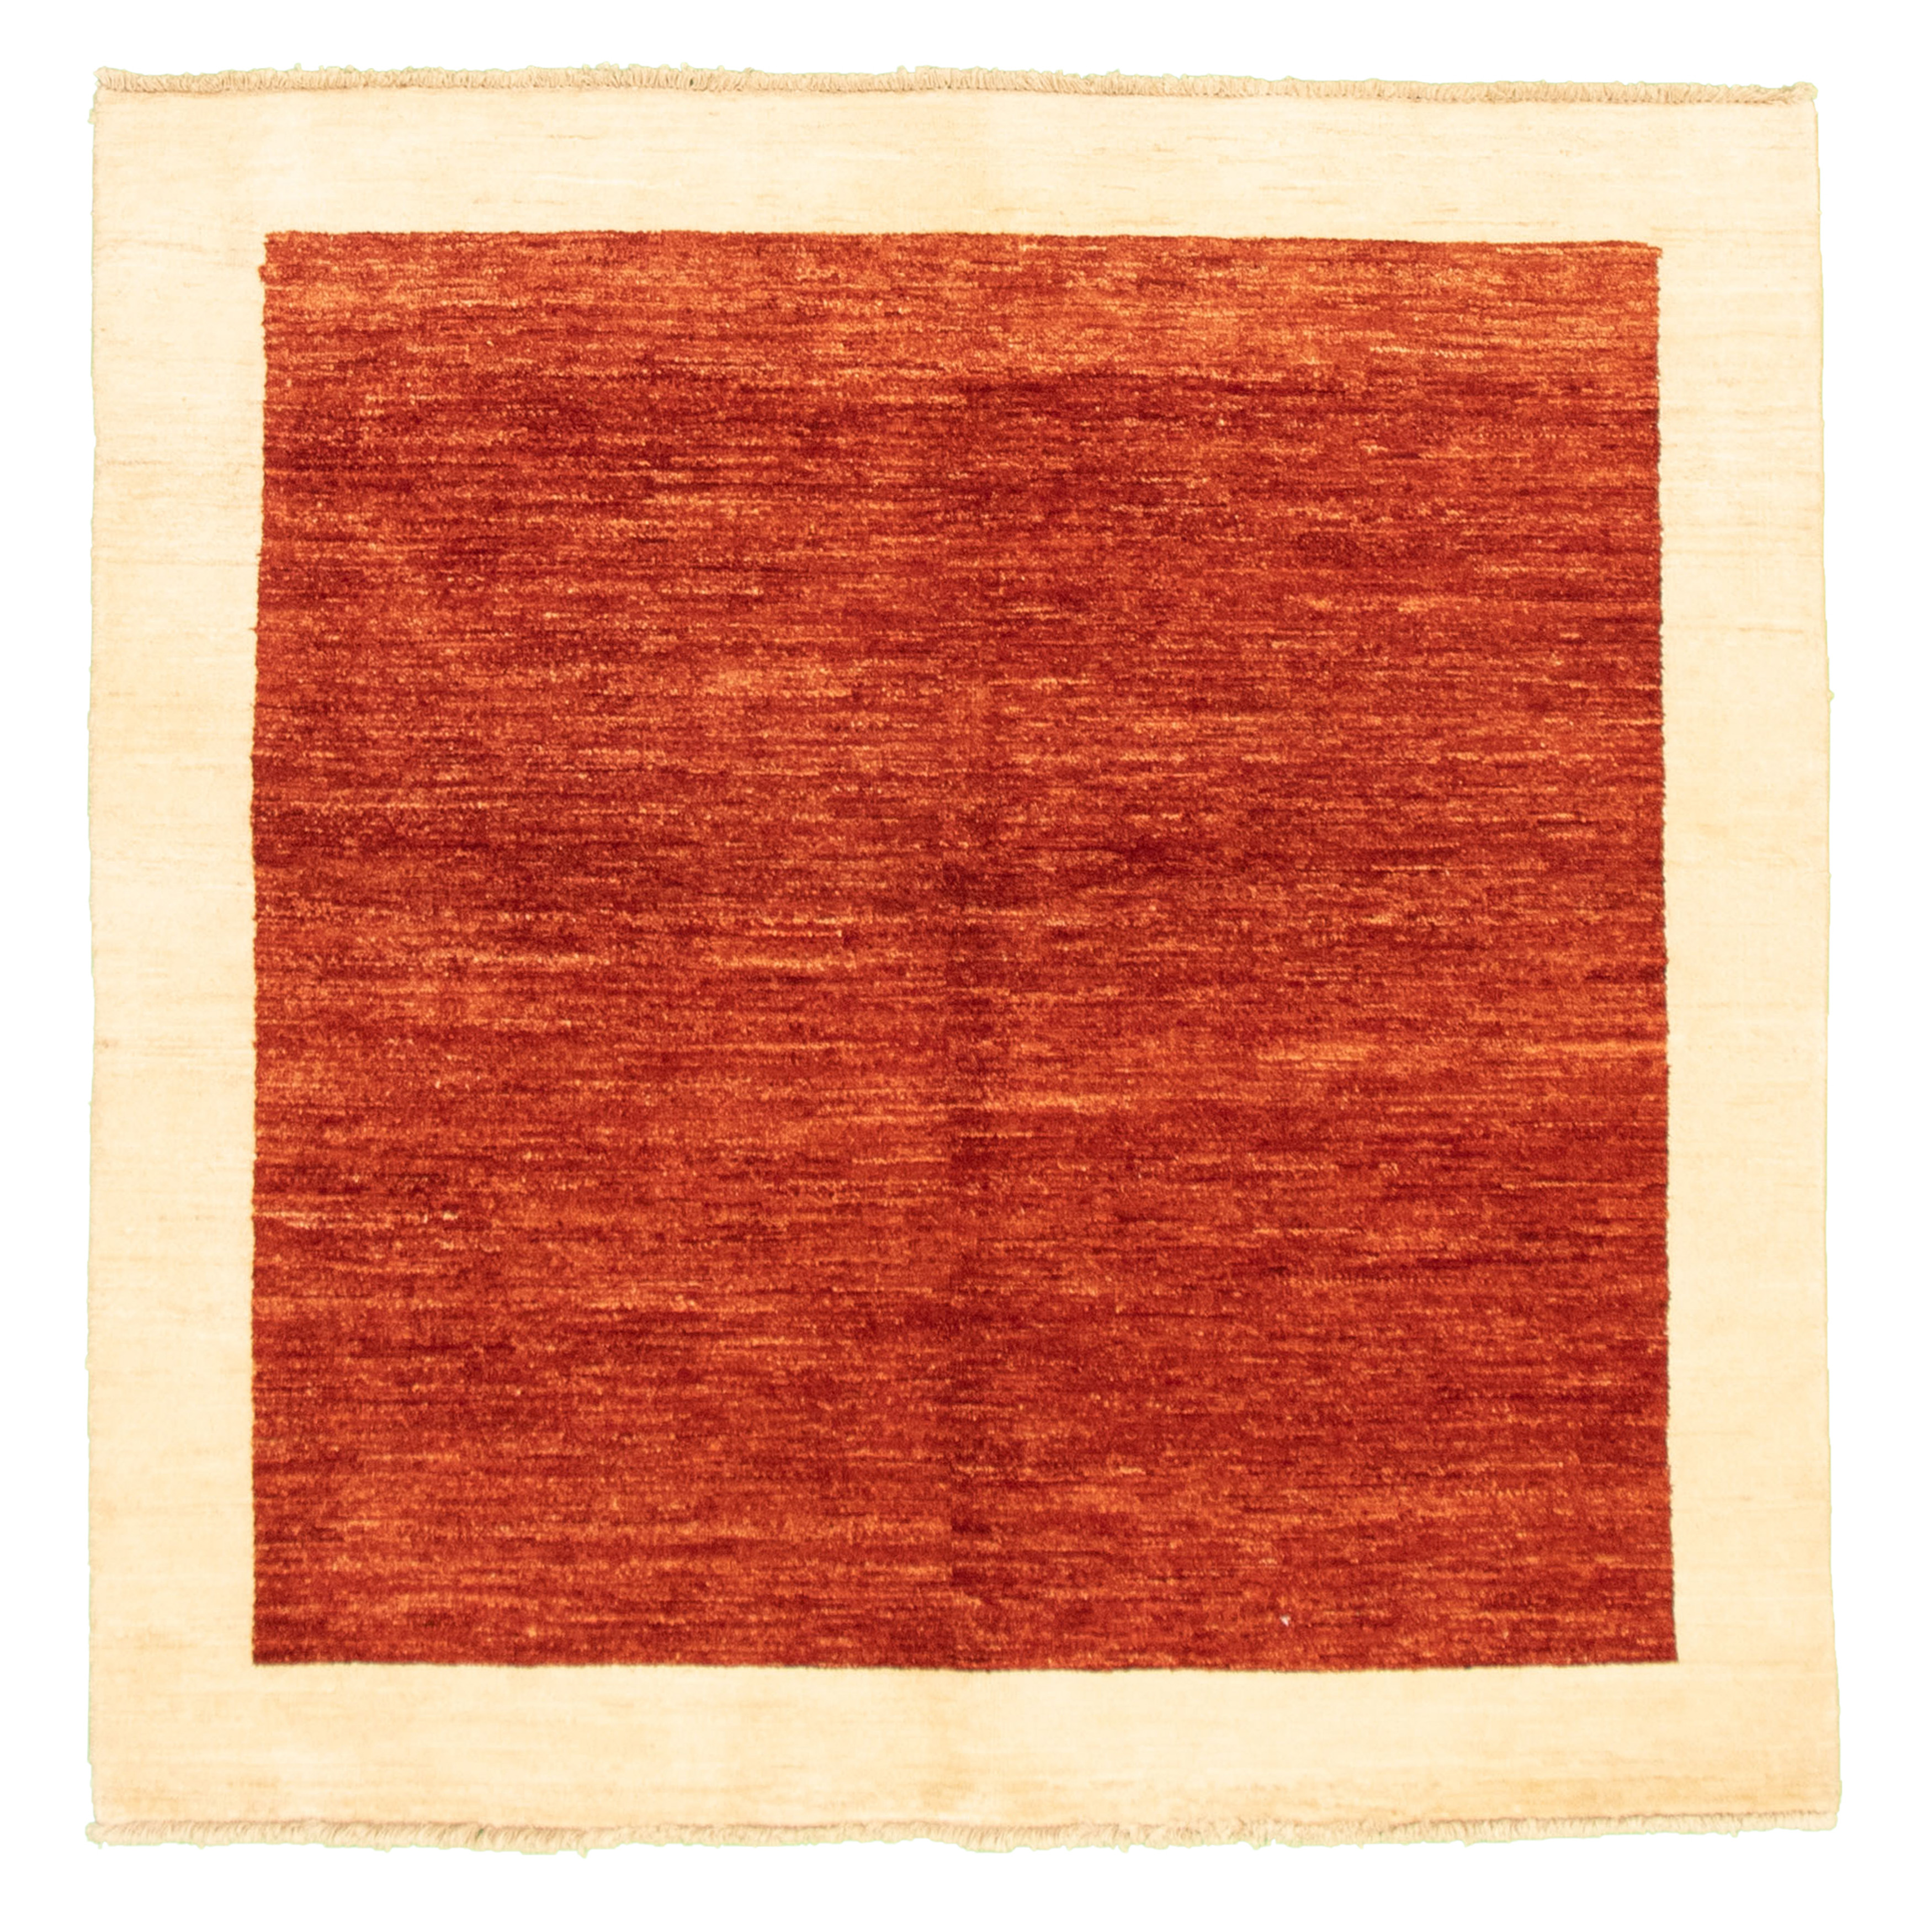 Hand-knotted Peshawar Ziegler Dark Copper Wool Rug 4'10" x 4'10" Size: 4'10" x 4'10"  